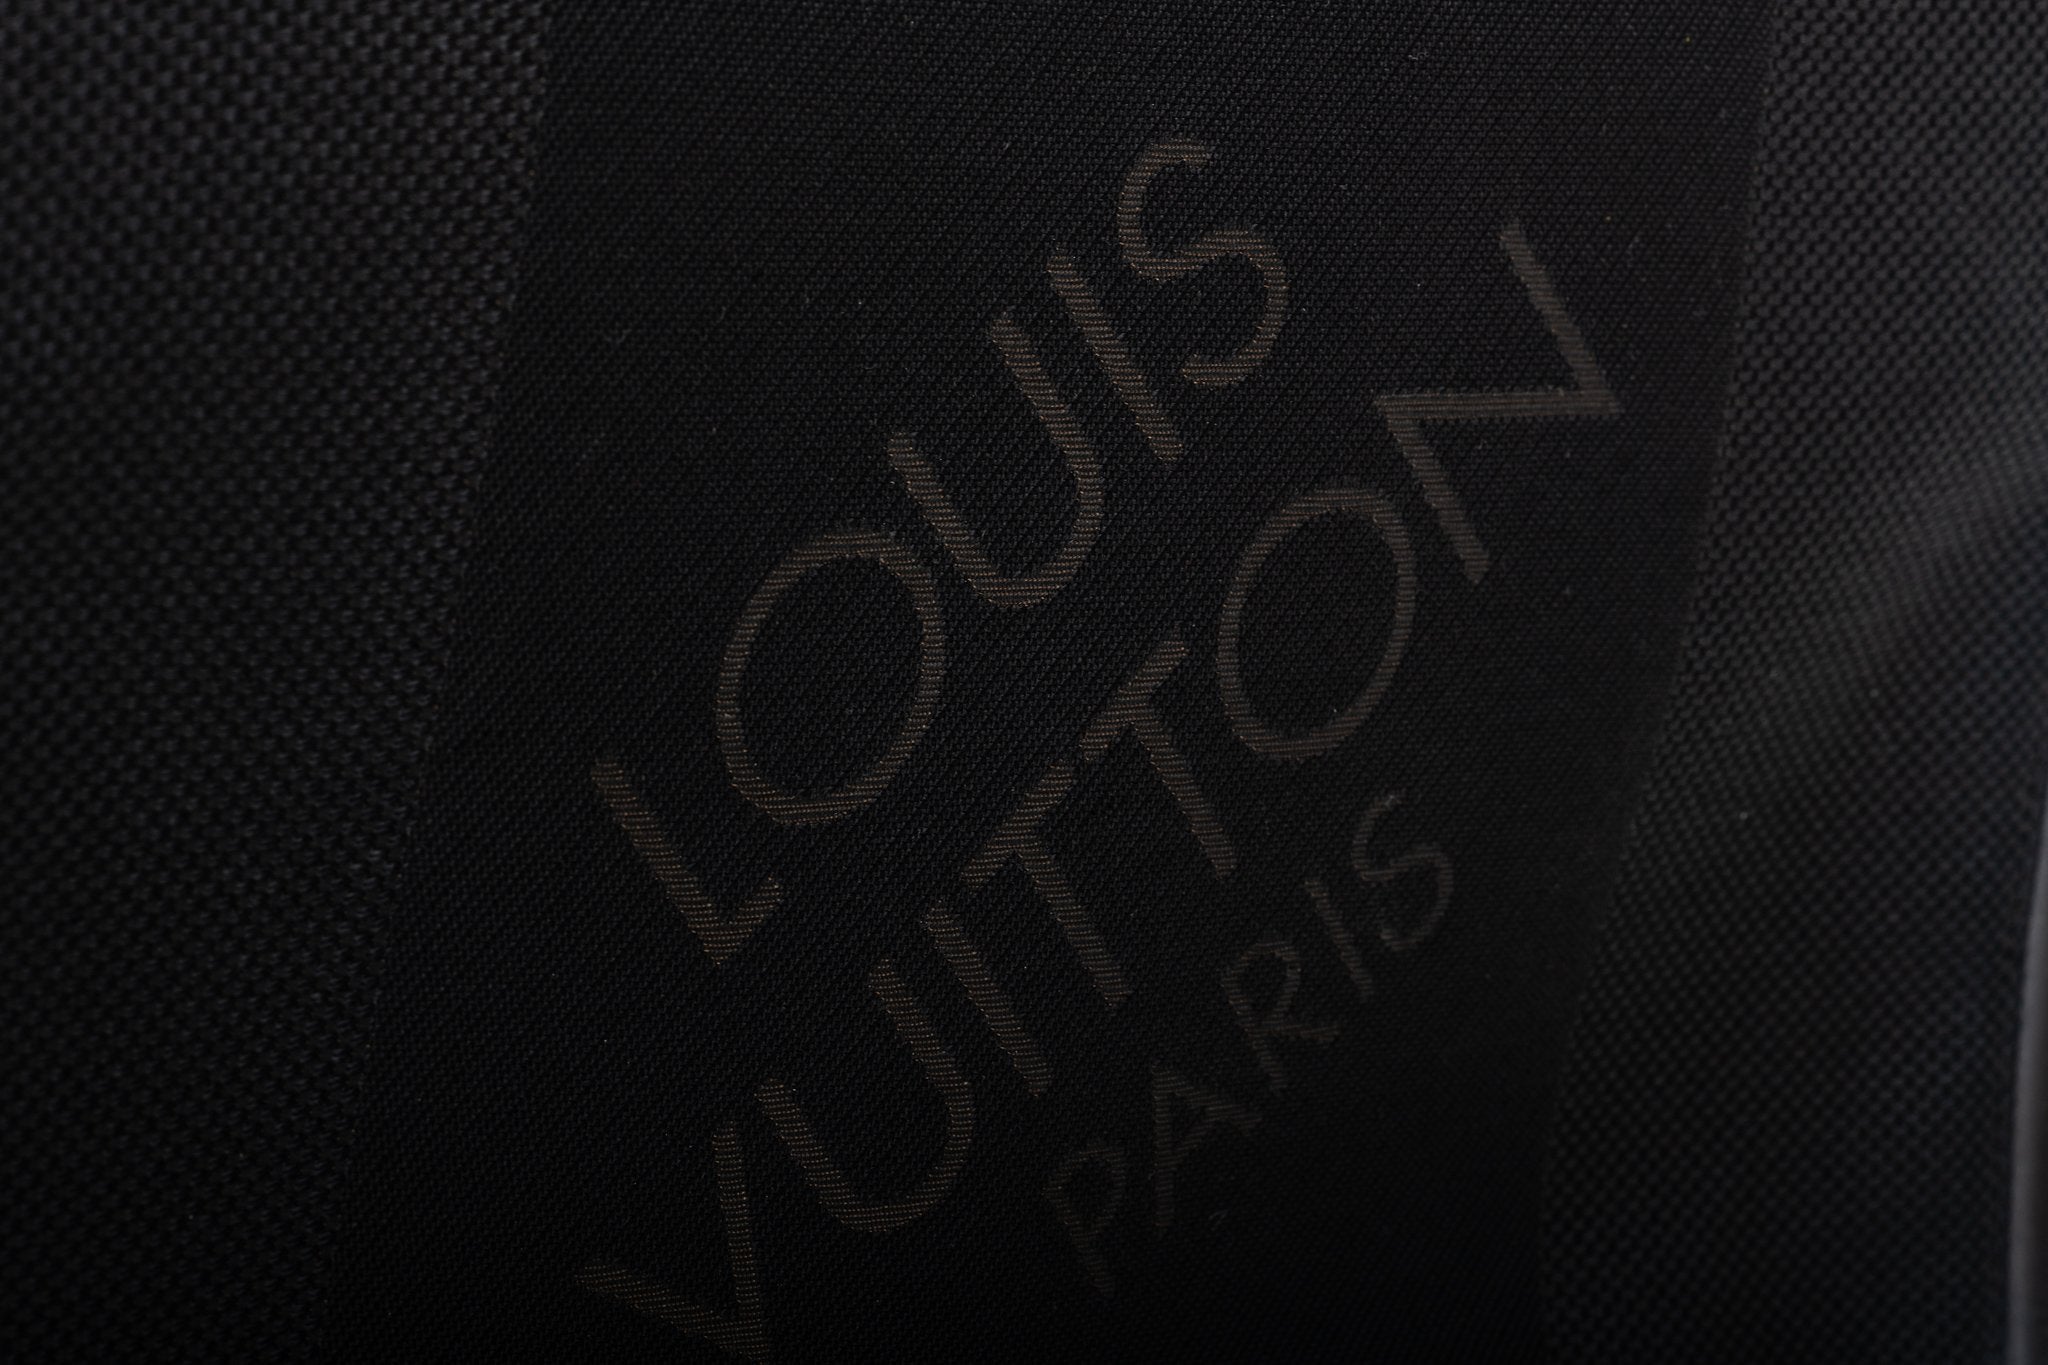 Louis Vuitton Black Men's Computer Bag Large